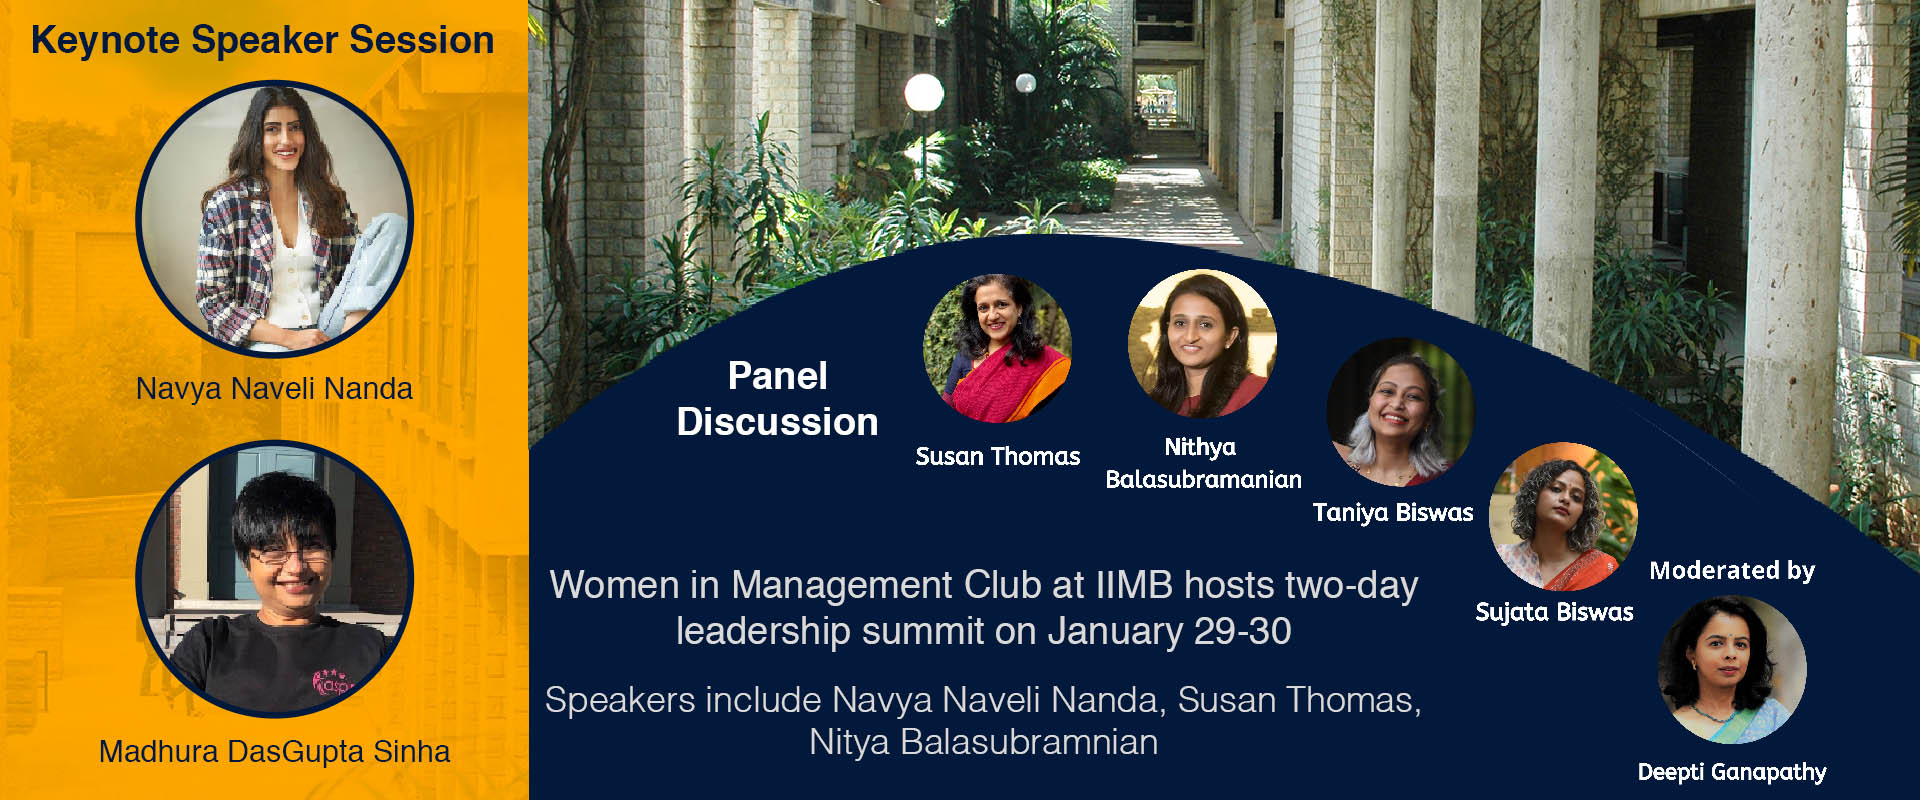 leadership summit on January 29-30